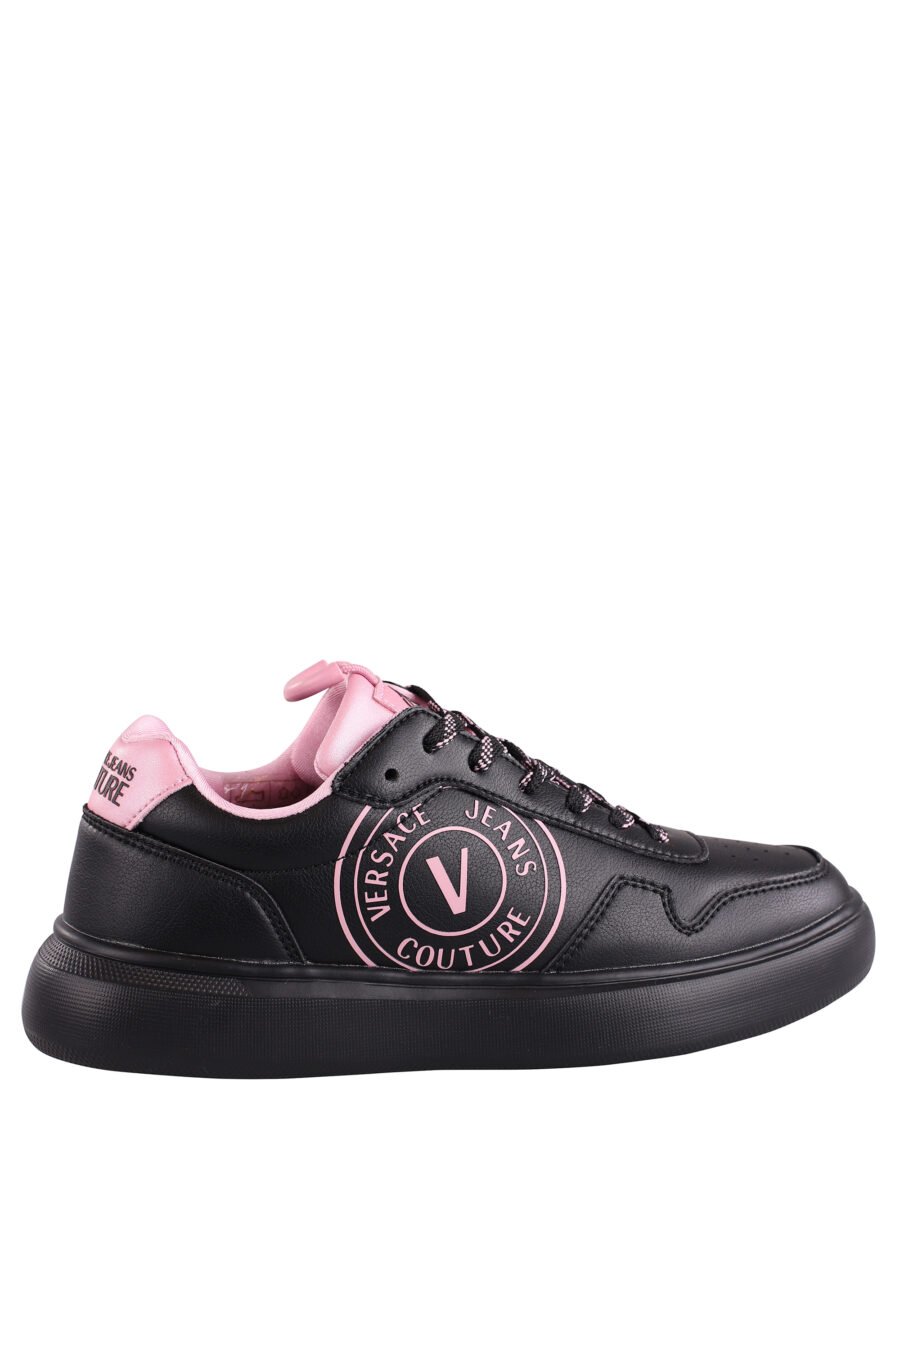 Zapatillas negras con detalles y logo rosa - IMG 9060